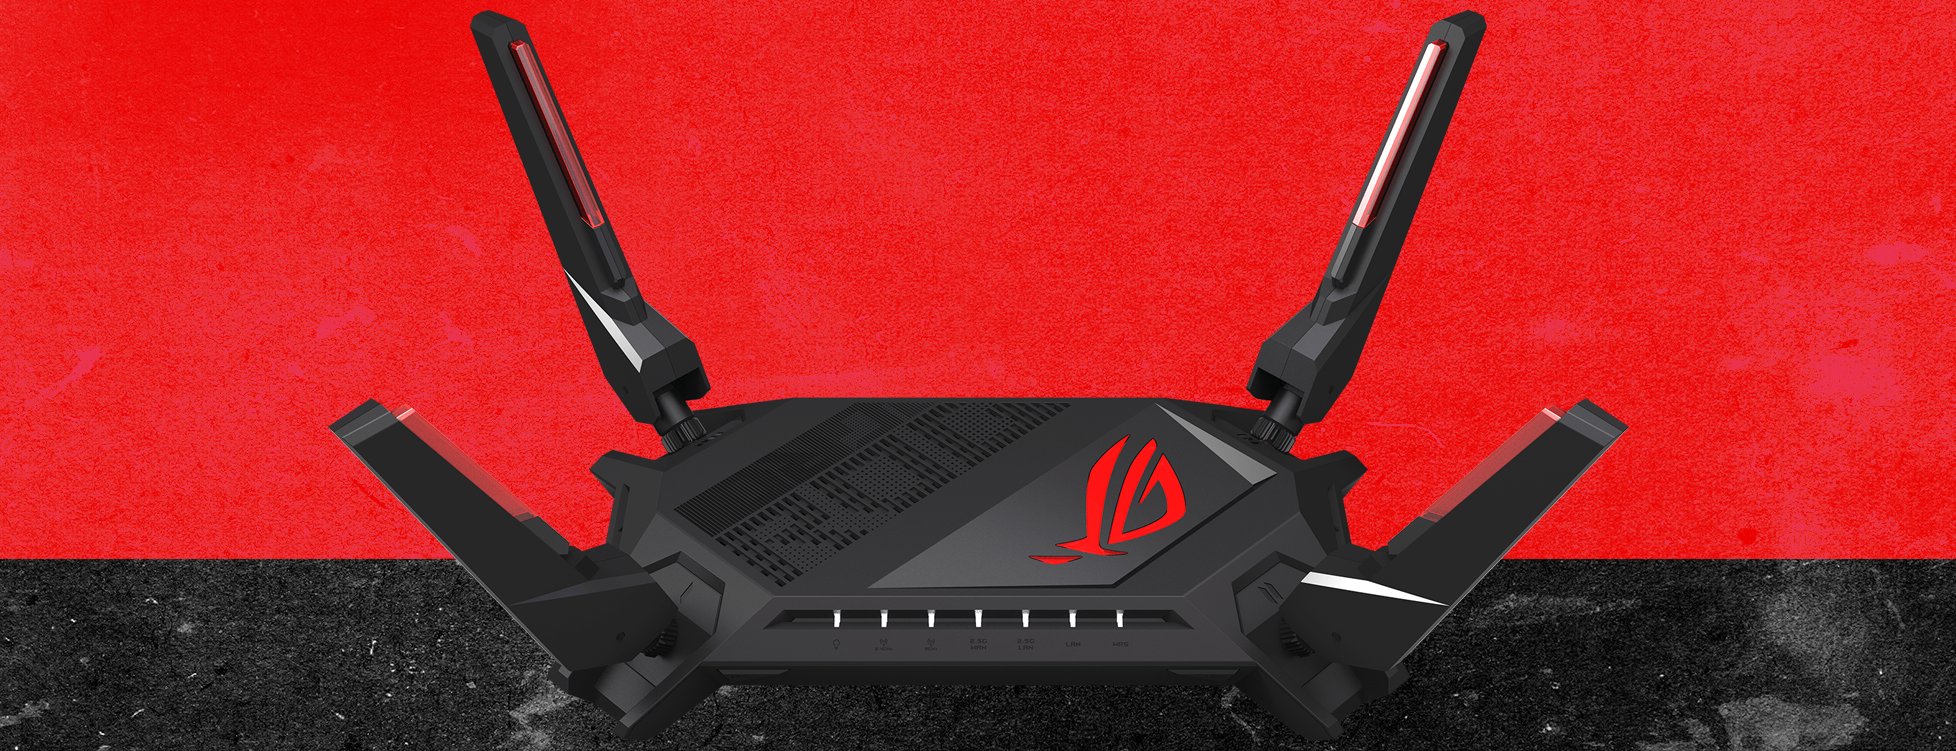 ראוטר גיימינג Asus ROG Rapture GT-AX6000 WiFi 6 - צבע שחור שלוש שנות אחריות ע"י היבואן הרשמי